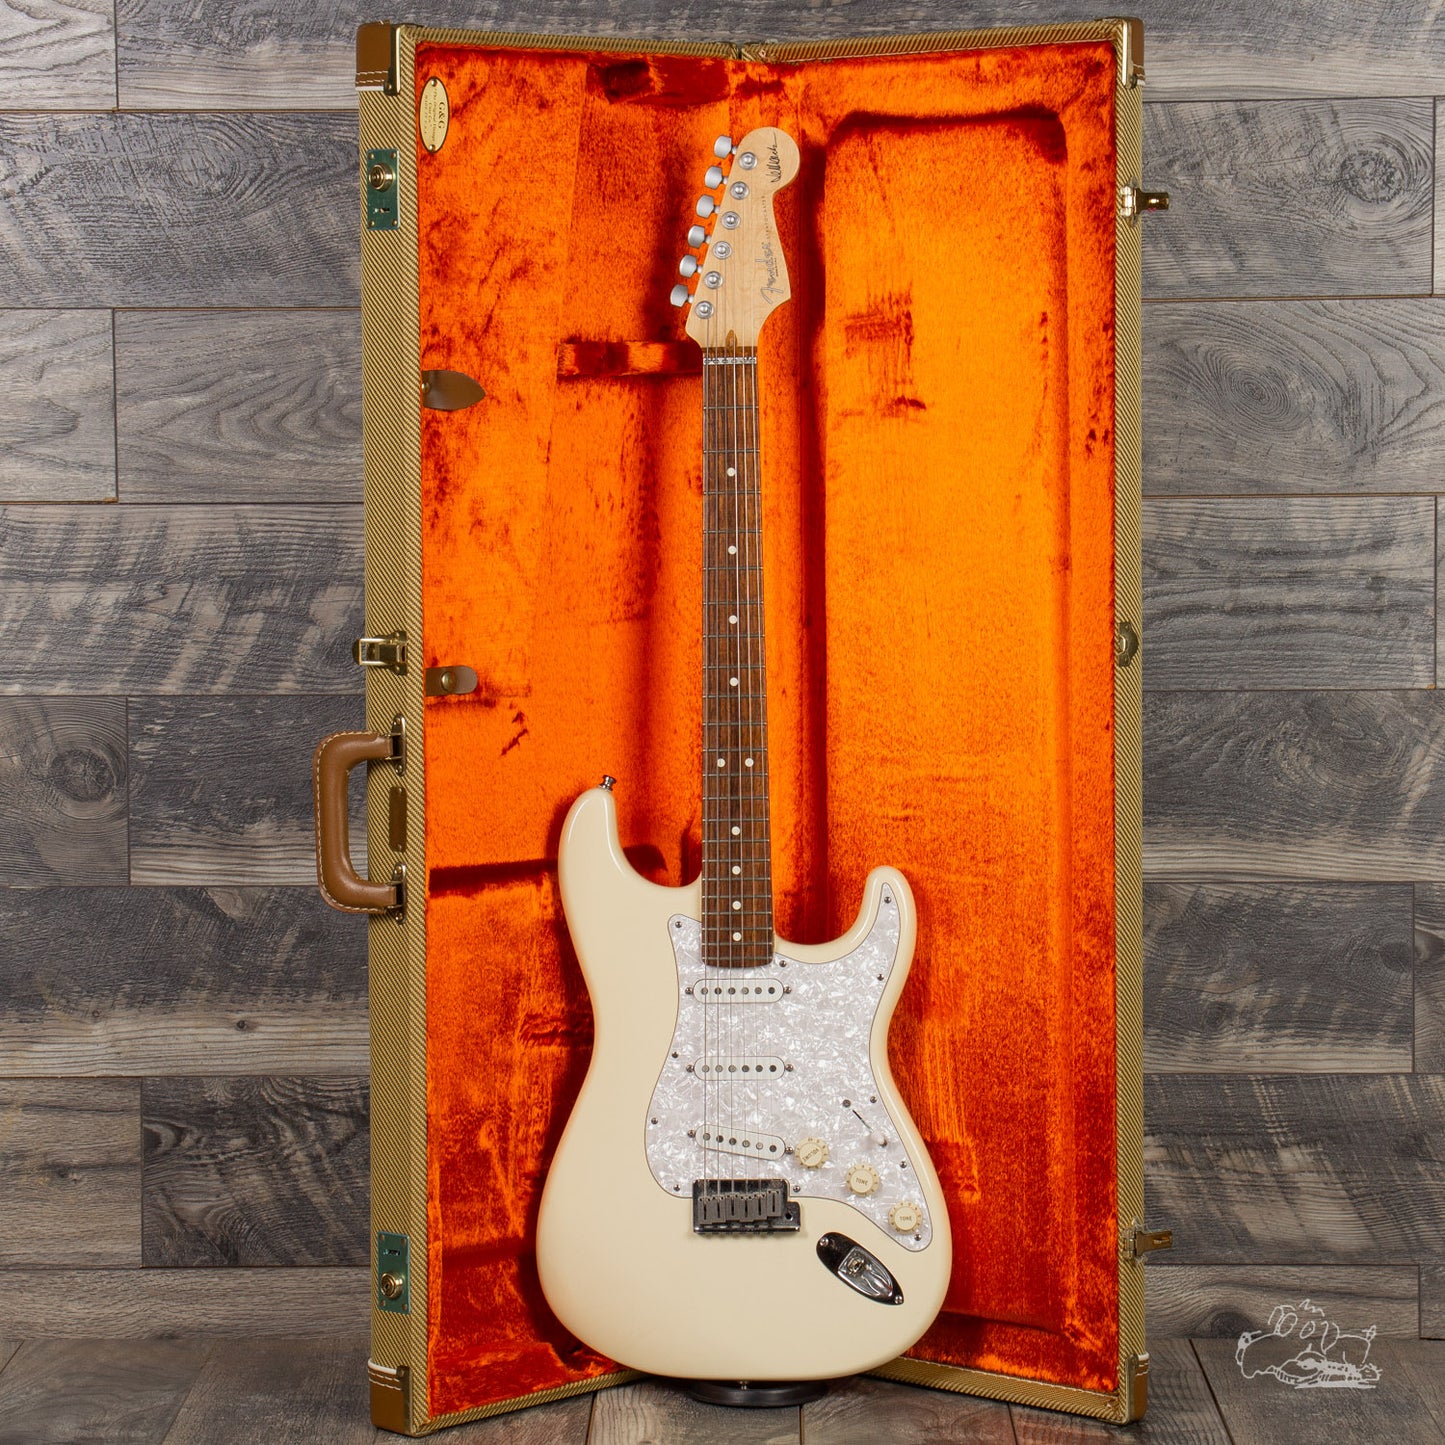 2008 Fender Jeff Beck Stratocaster - Make us an Offer!